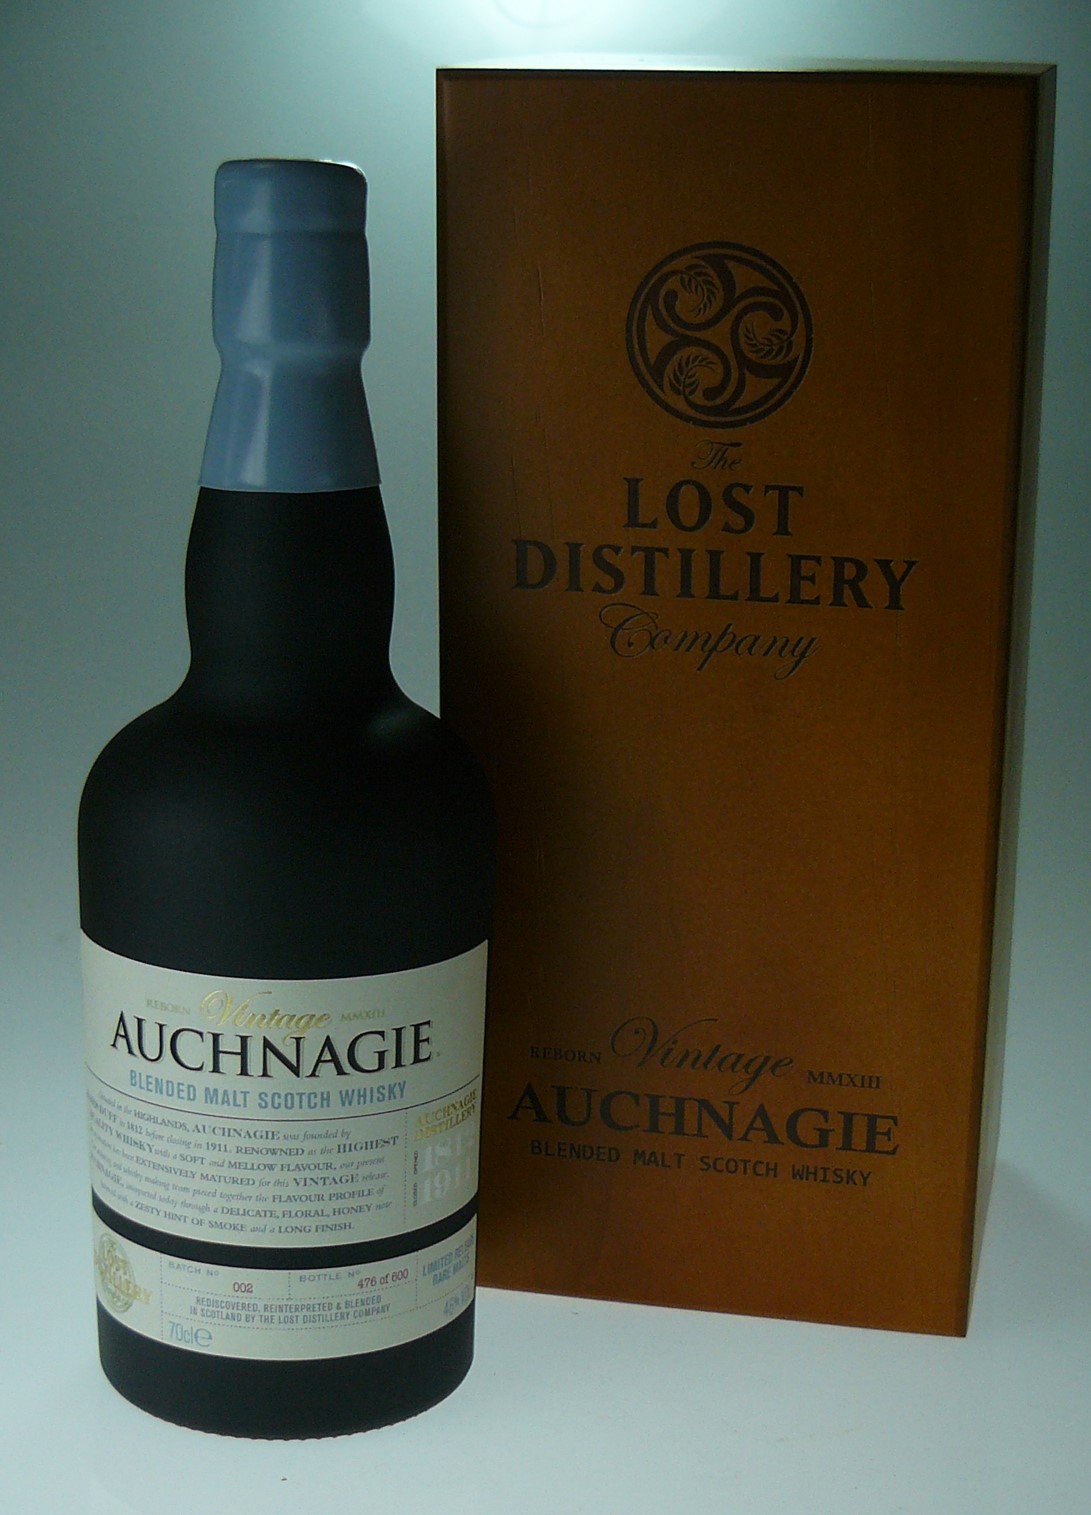 Auld River Whisky ウイスキー・オールドボトル・スコッチ・ビンテージ 